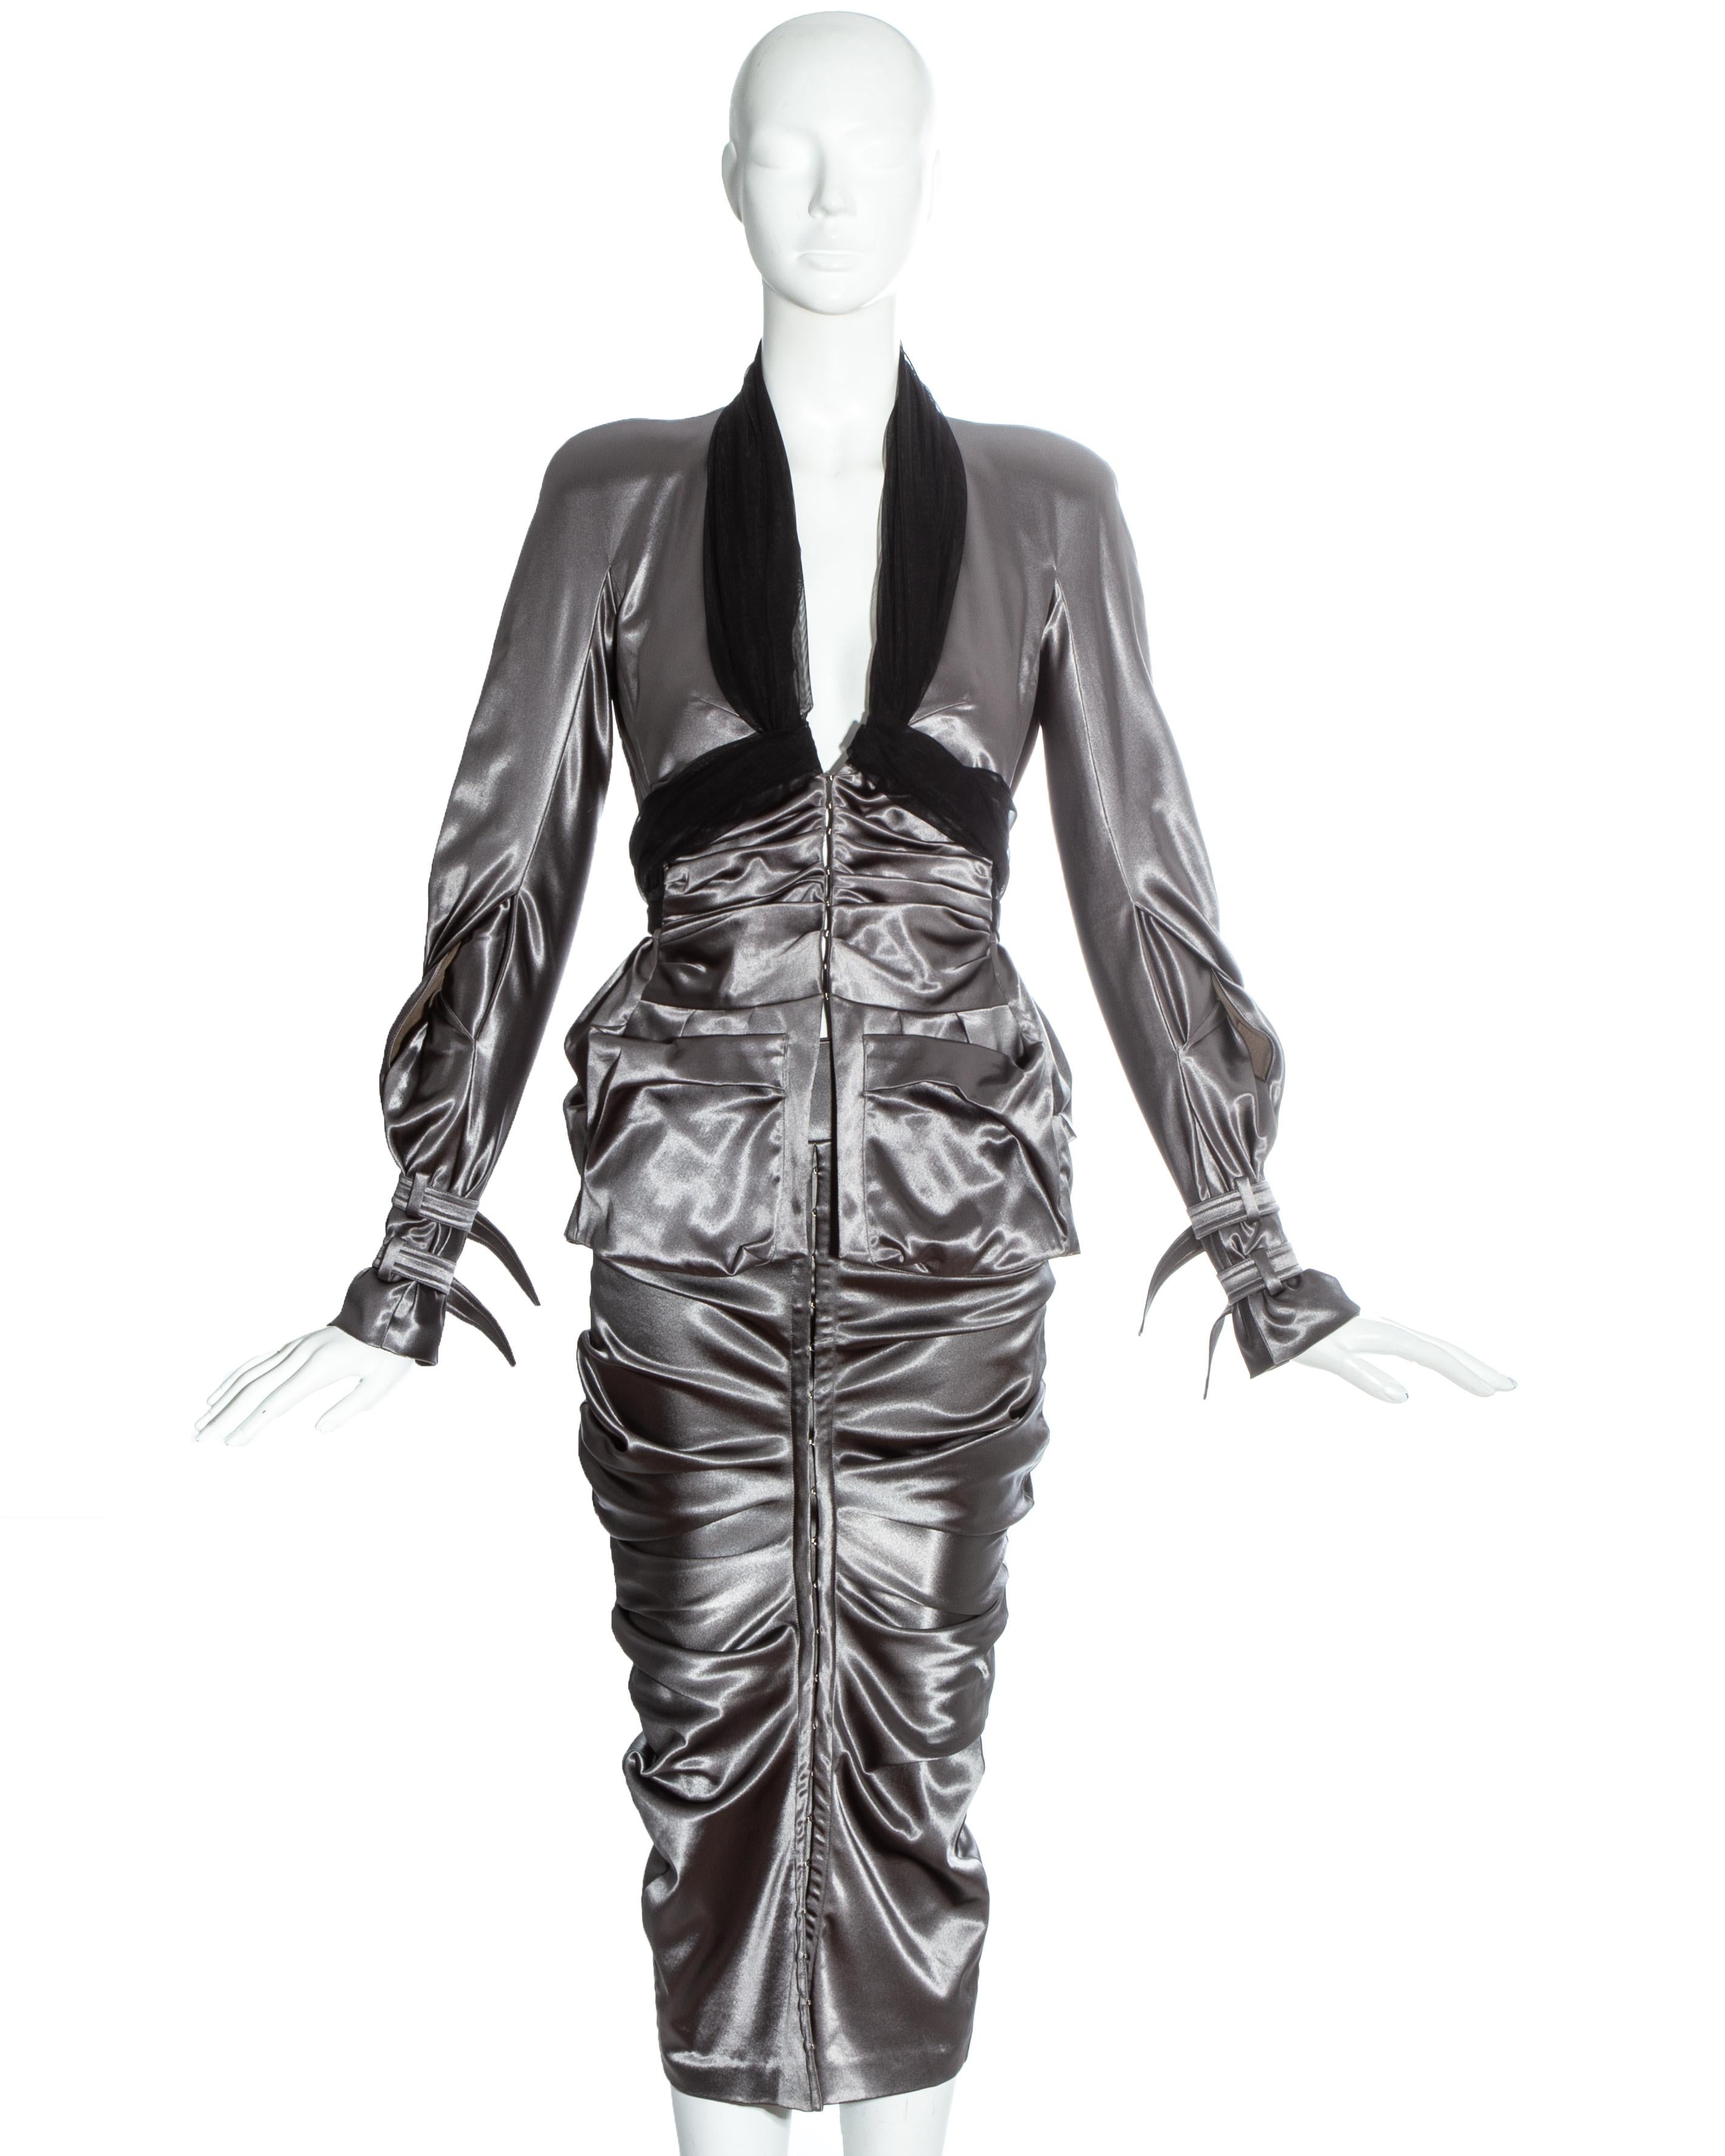 Tailleur jupe Christian Dior by John Galliano gris gunmetal. Veste froncée avec col licou en tulle noir, poignets à boucle, manches torsadées, épaules paddées et fermetures à crochets métalliques de type corset. Jupe ajustée avec fronces autour des